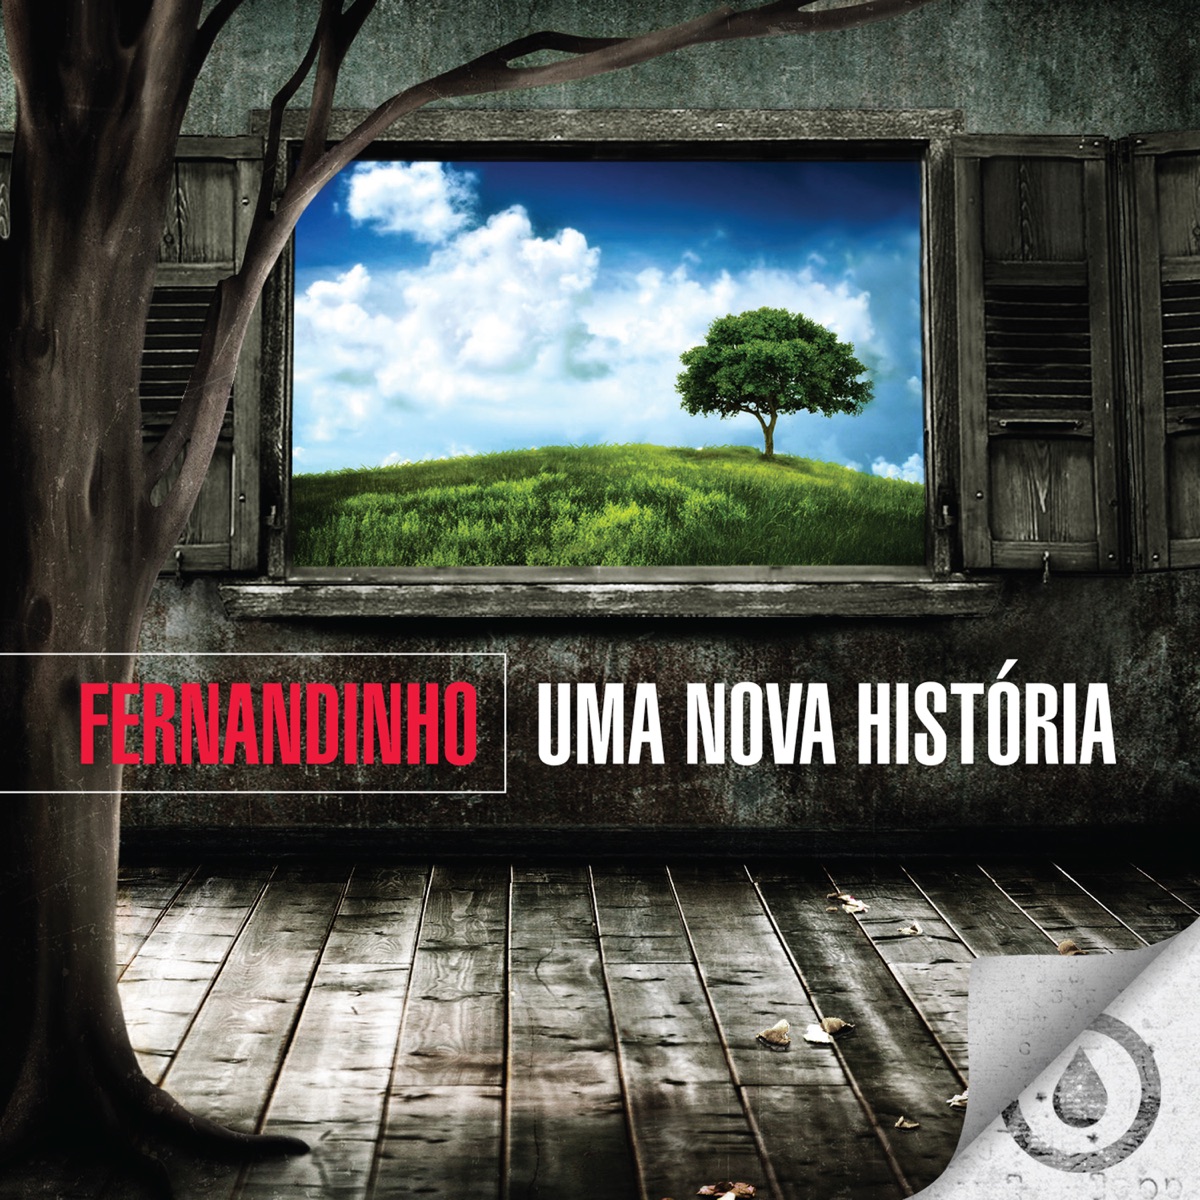 Santo (Acústico) — álbum de Fernandinho — Apple Music